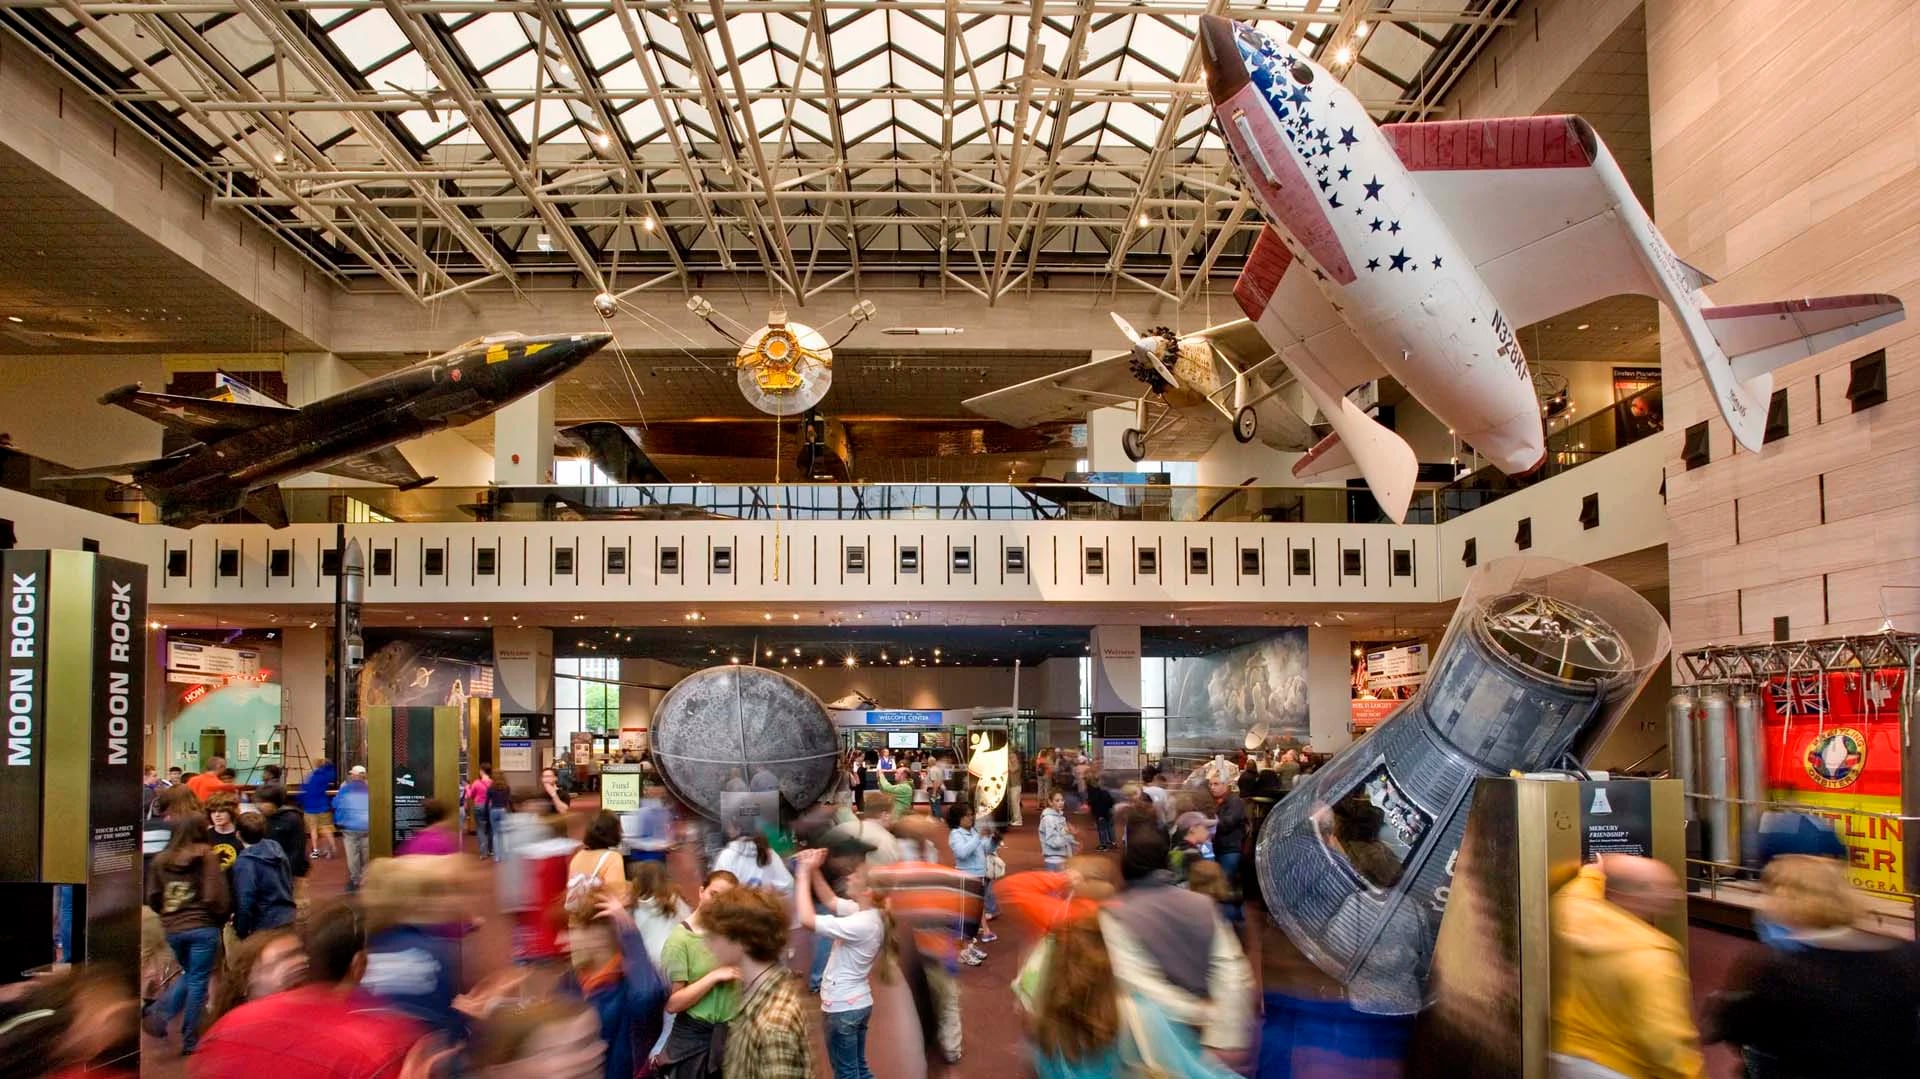 El Museo Nacional del Aire y el Espacio (National Air and Space Museum) pertenece a la Smithsonian Institution